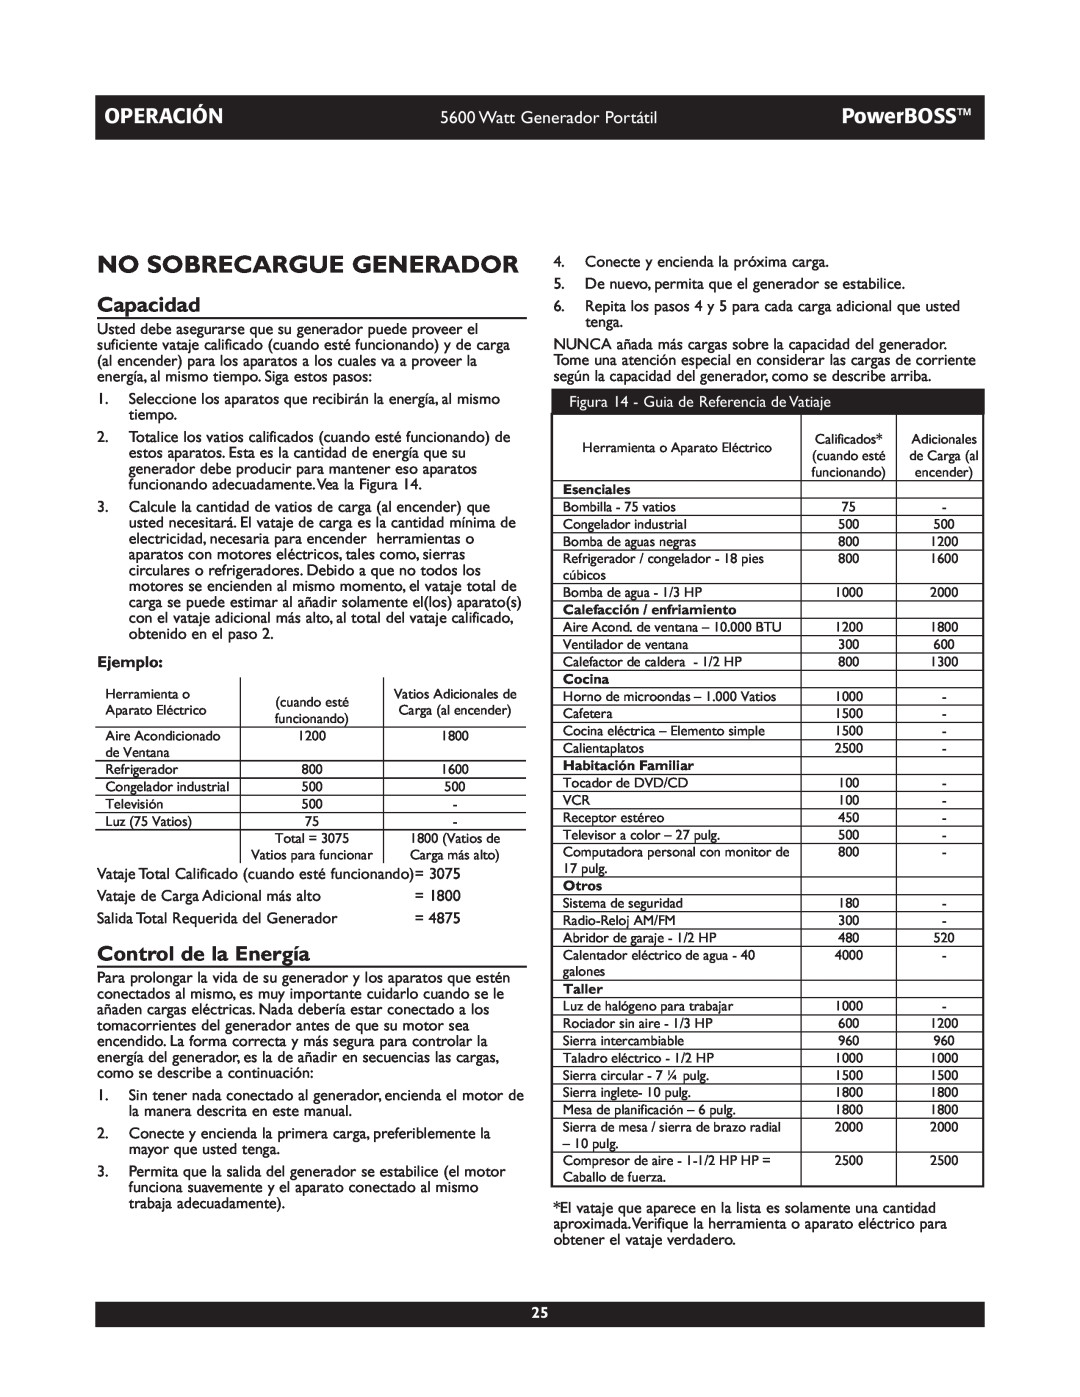 Briggs & Stratton 30230 manual No Sobrecargue Generador, Capacidad, Control de la Energía, Operación, PowerBOSS, Ejemplo 